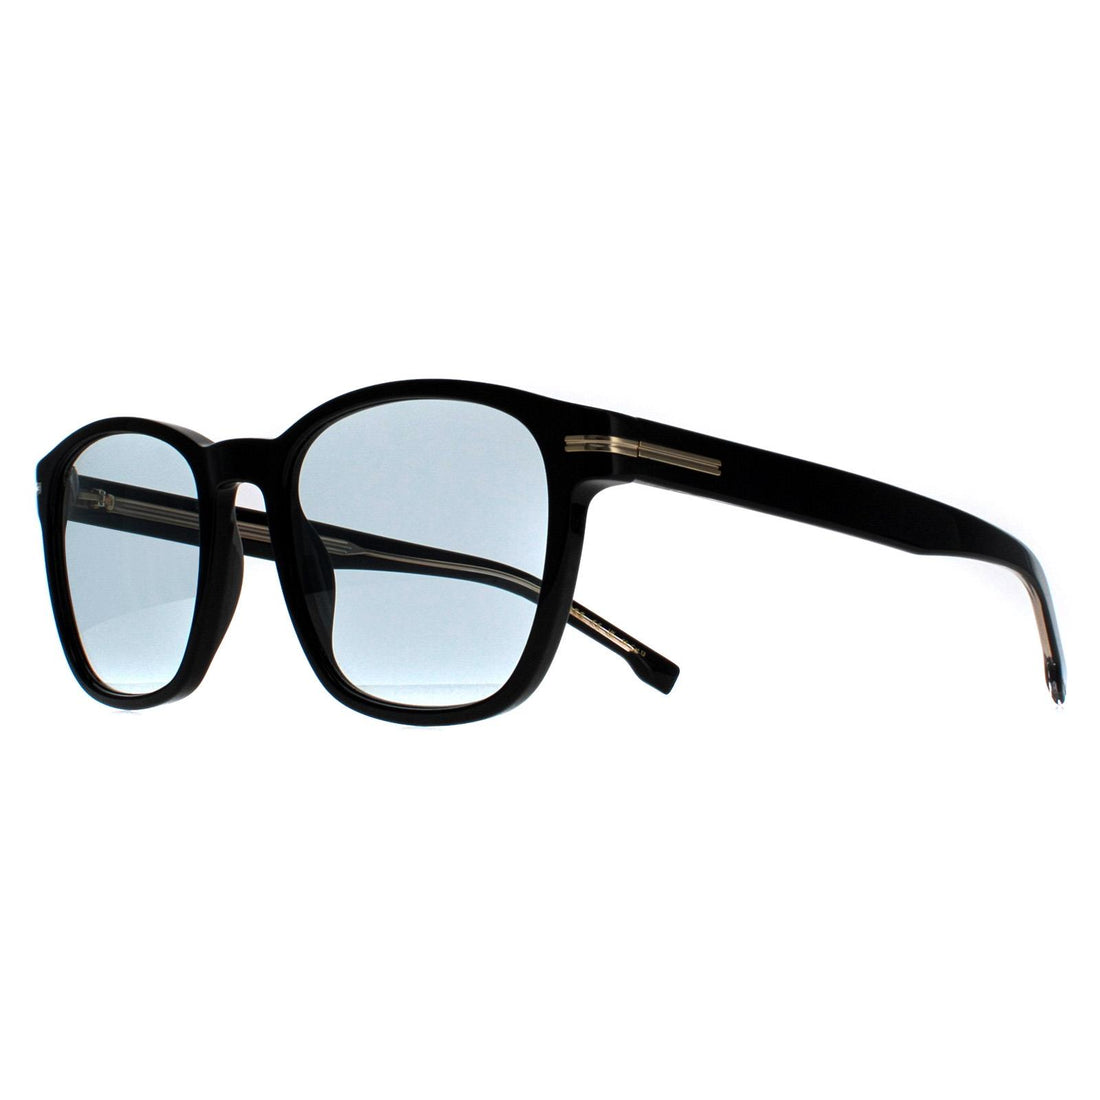 Hugo Boss Sunglasses BOSS 1505/S 807 1N Black Azure Photochromic